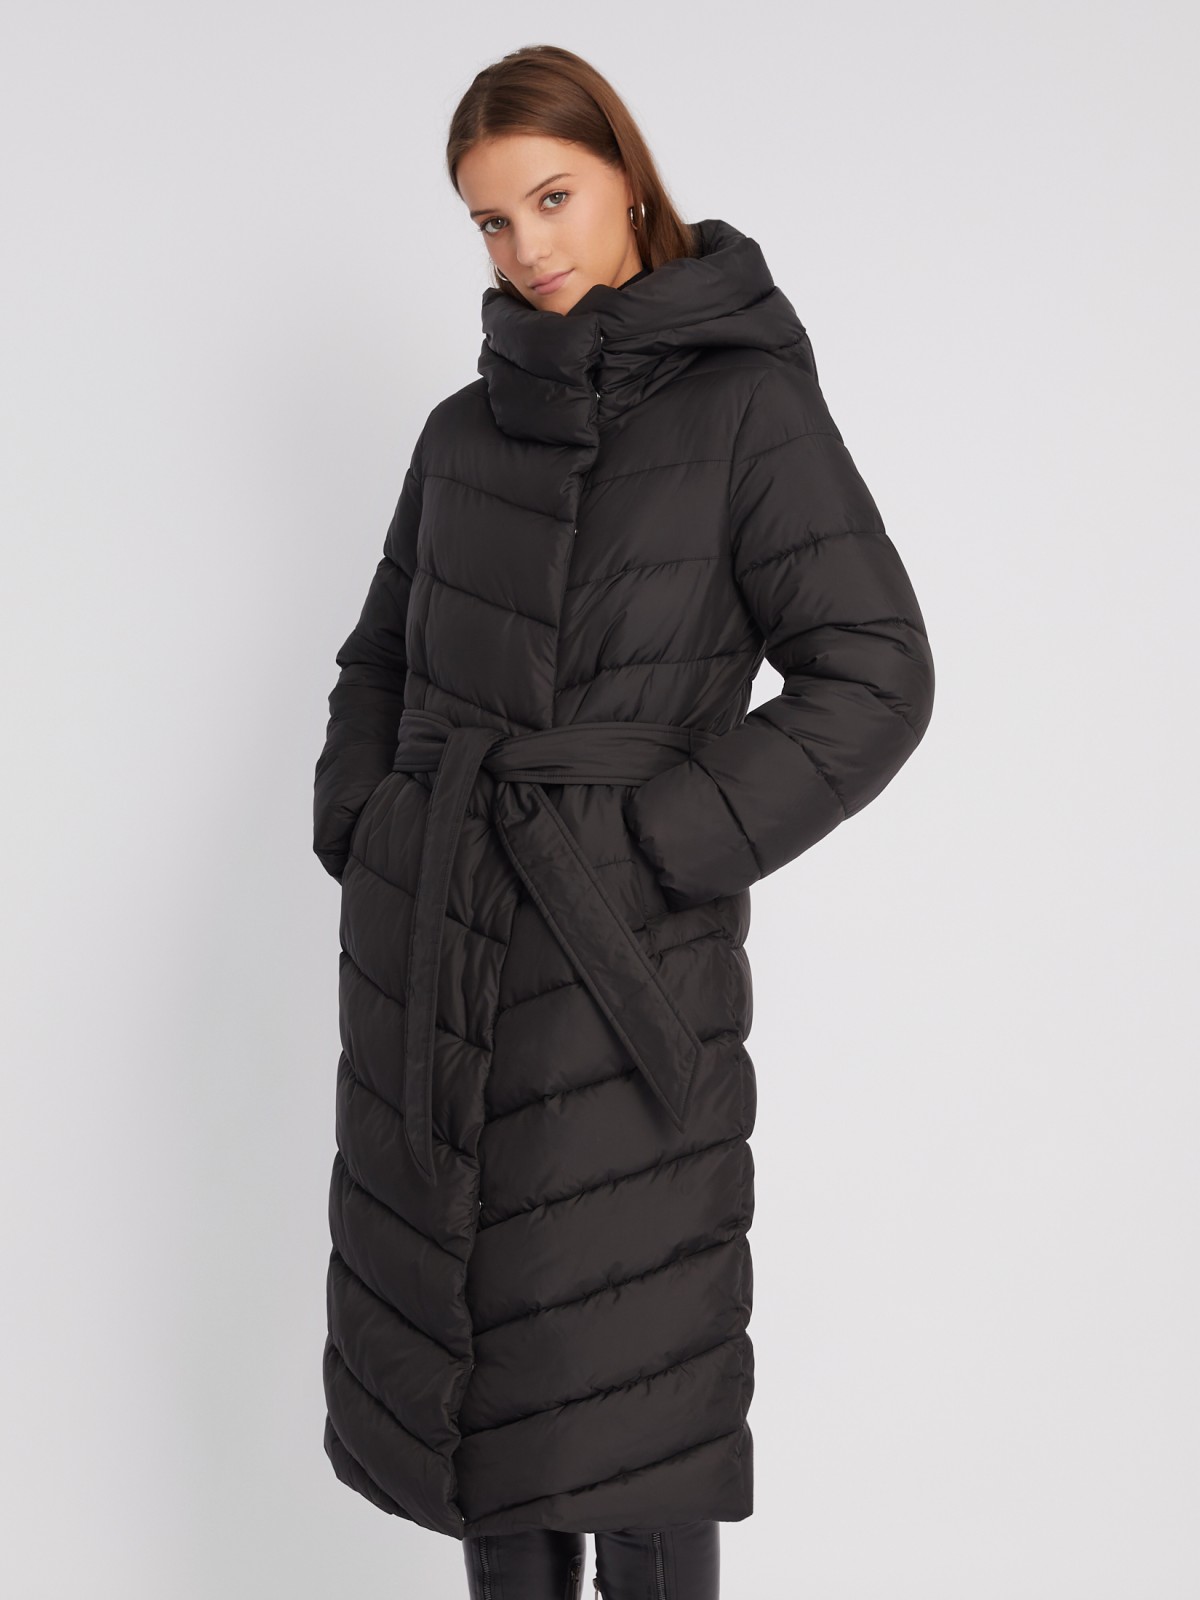 Тёплая длинная куртка-пальто с капюшоном и поясом zolla 022425212154, цвет черный, размер XS